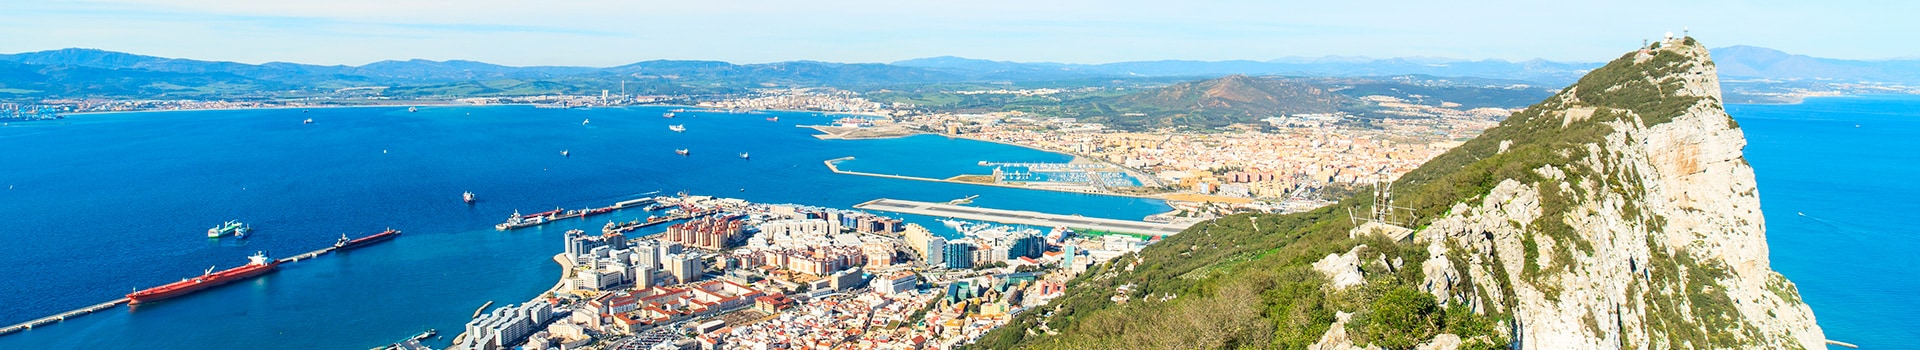 Lanzarote - Gibraltar